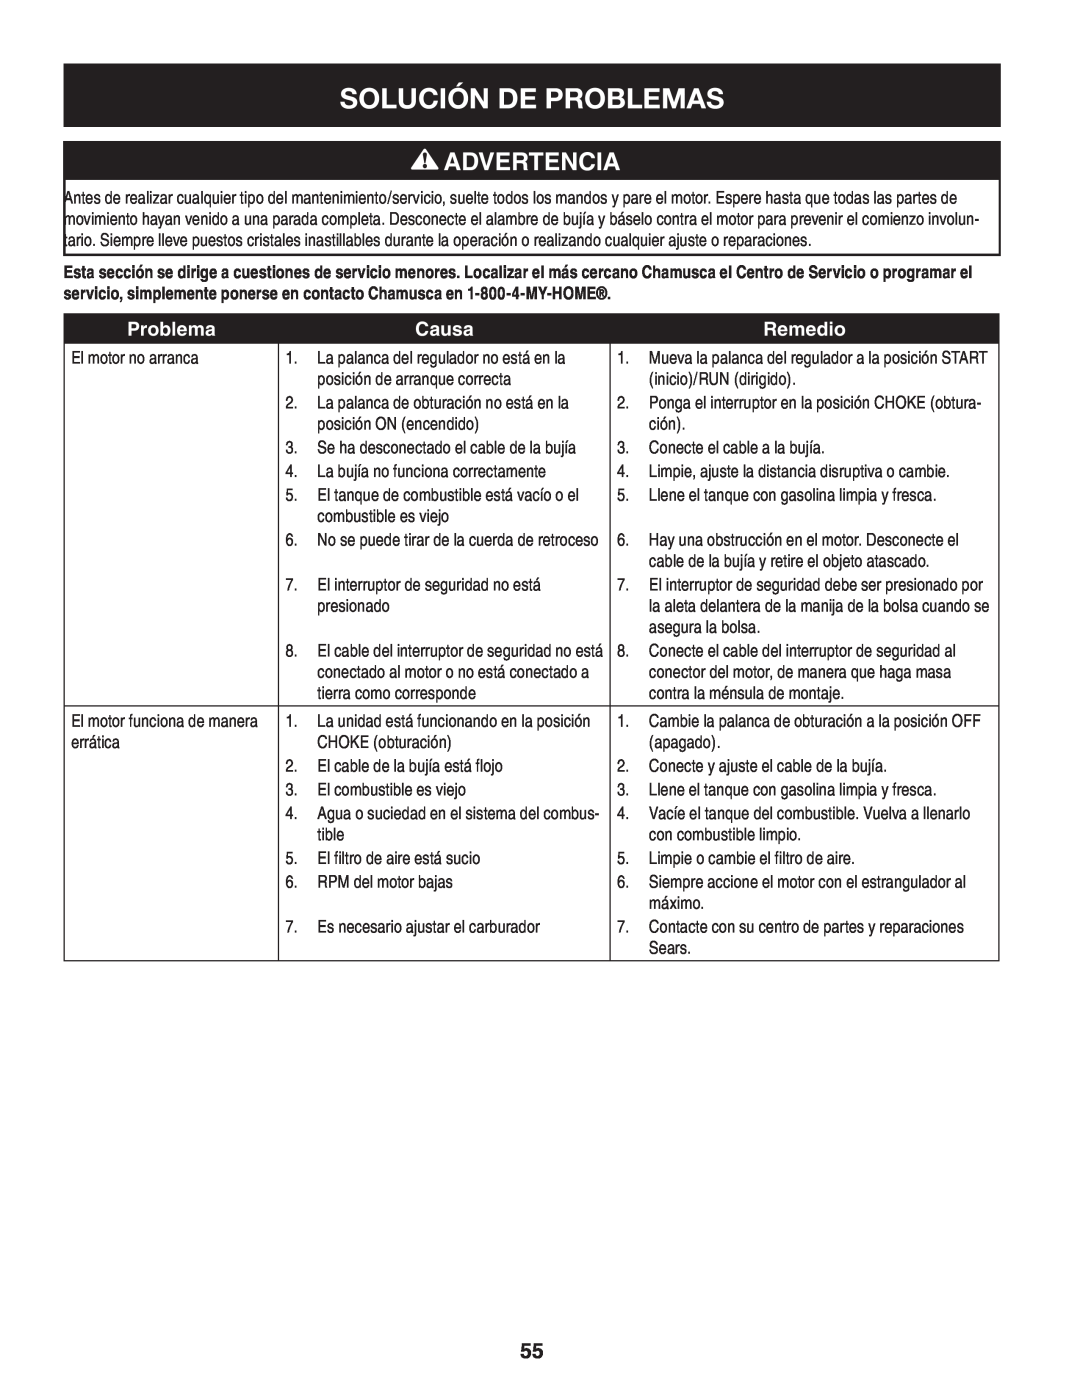 Craftsman 247.77013.0 manual Solución De Problemas, Advertencia, Causa, Remedio 